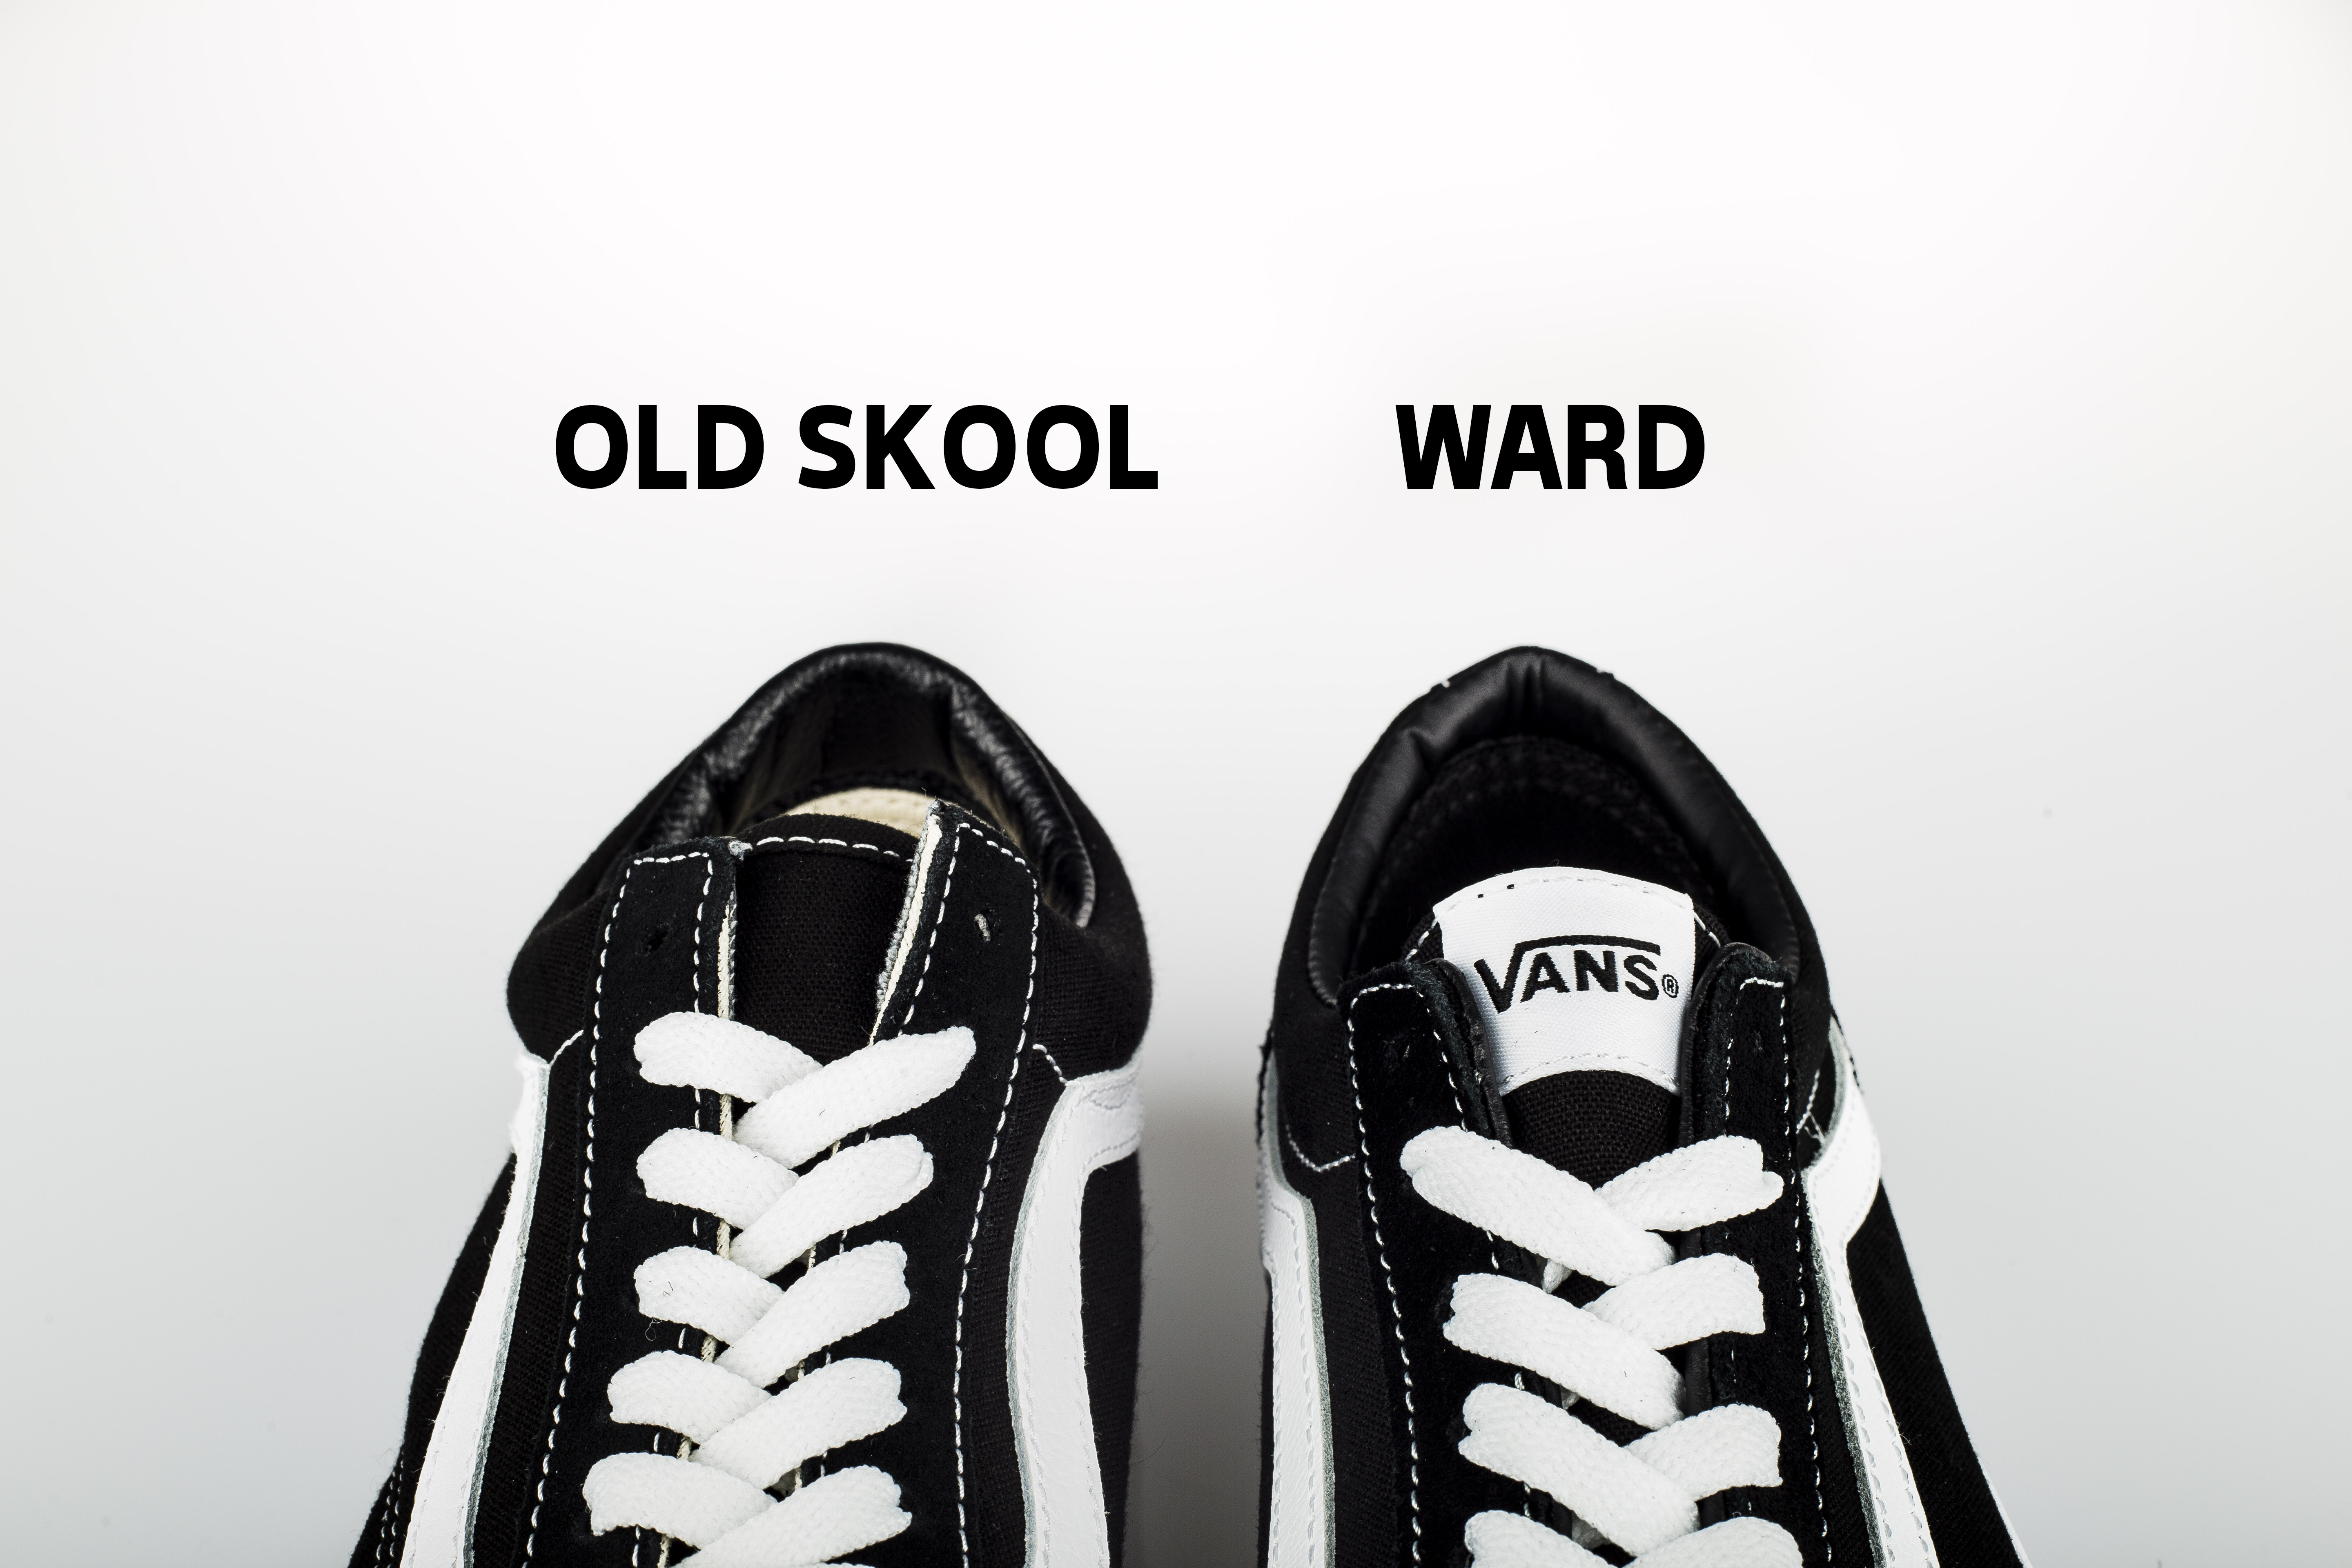 vans yt ward vs old skool